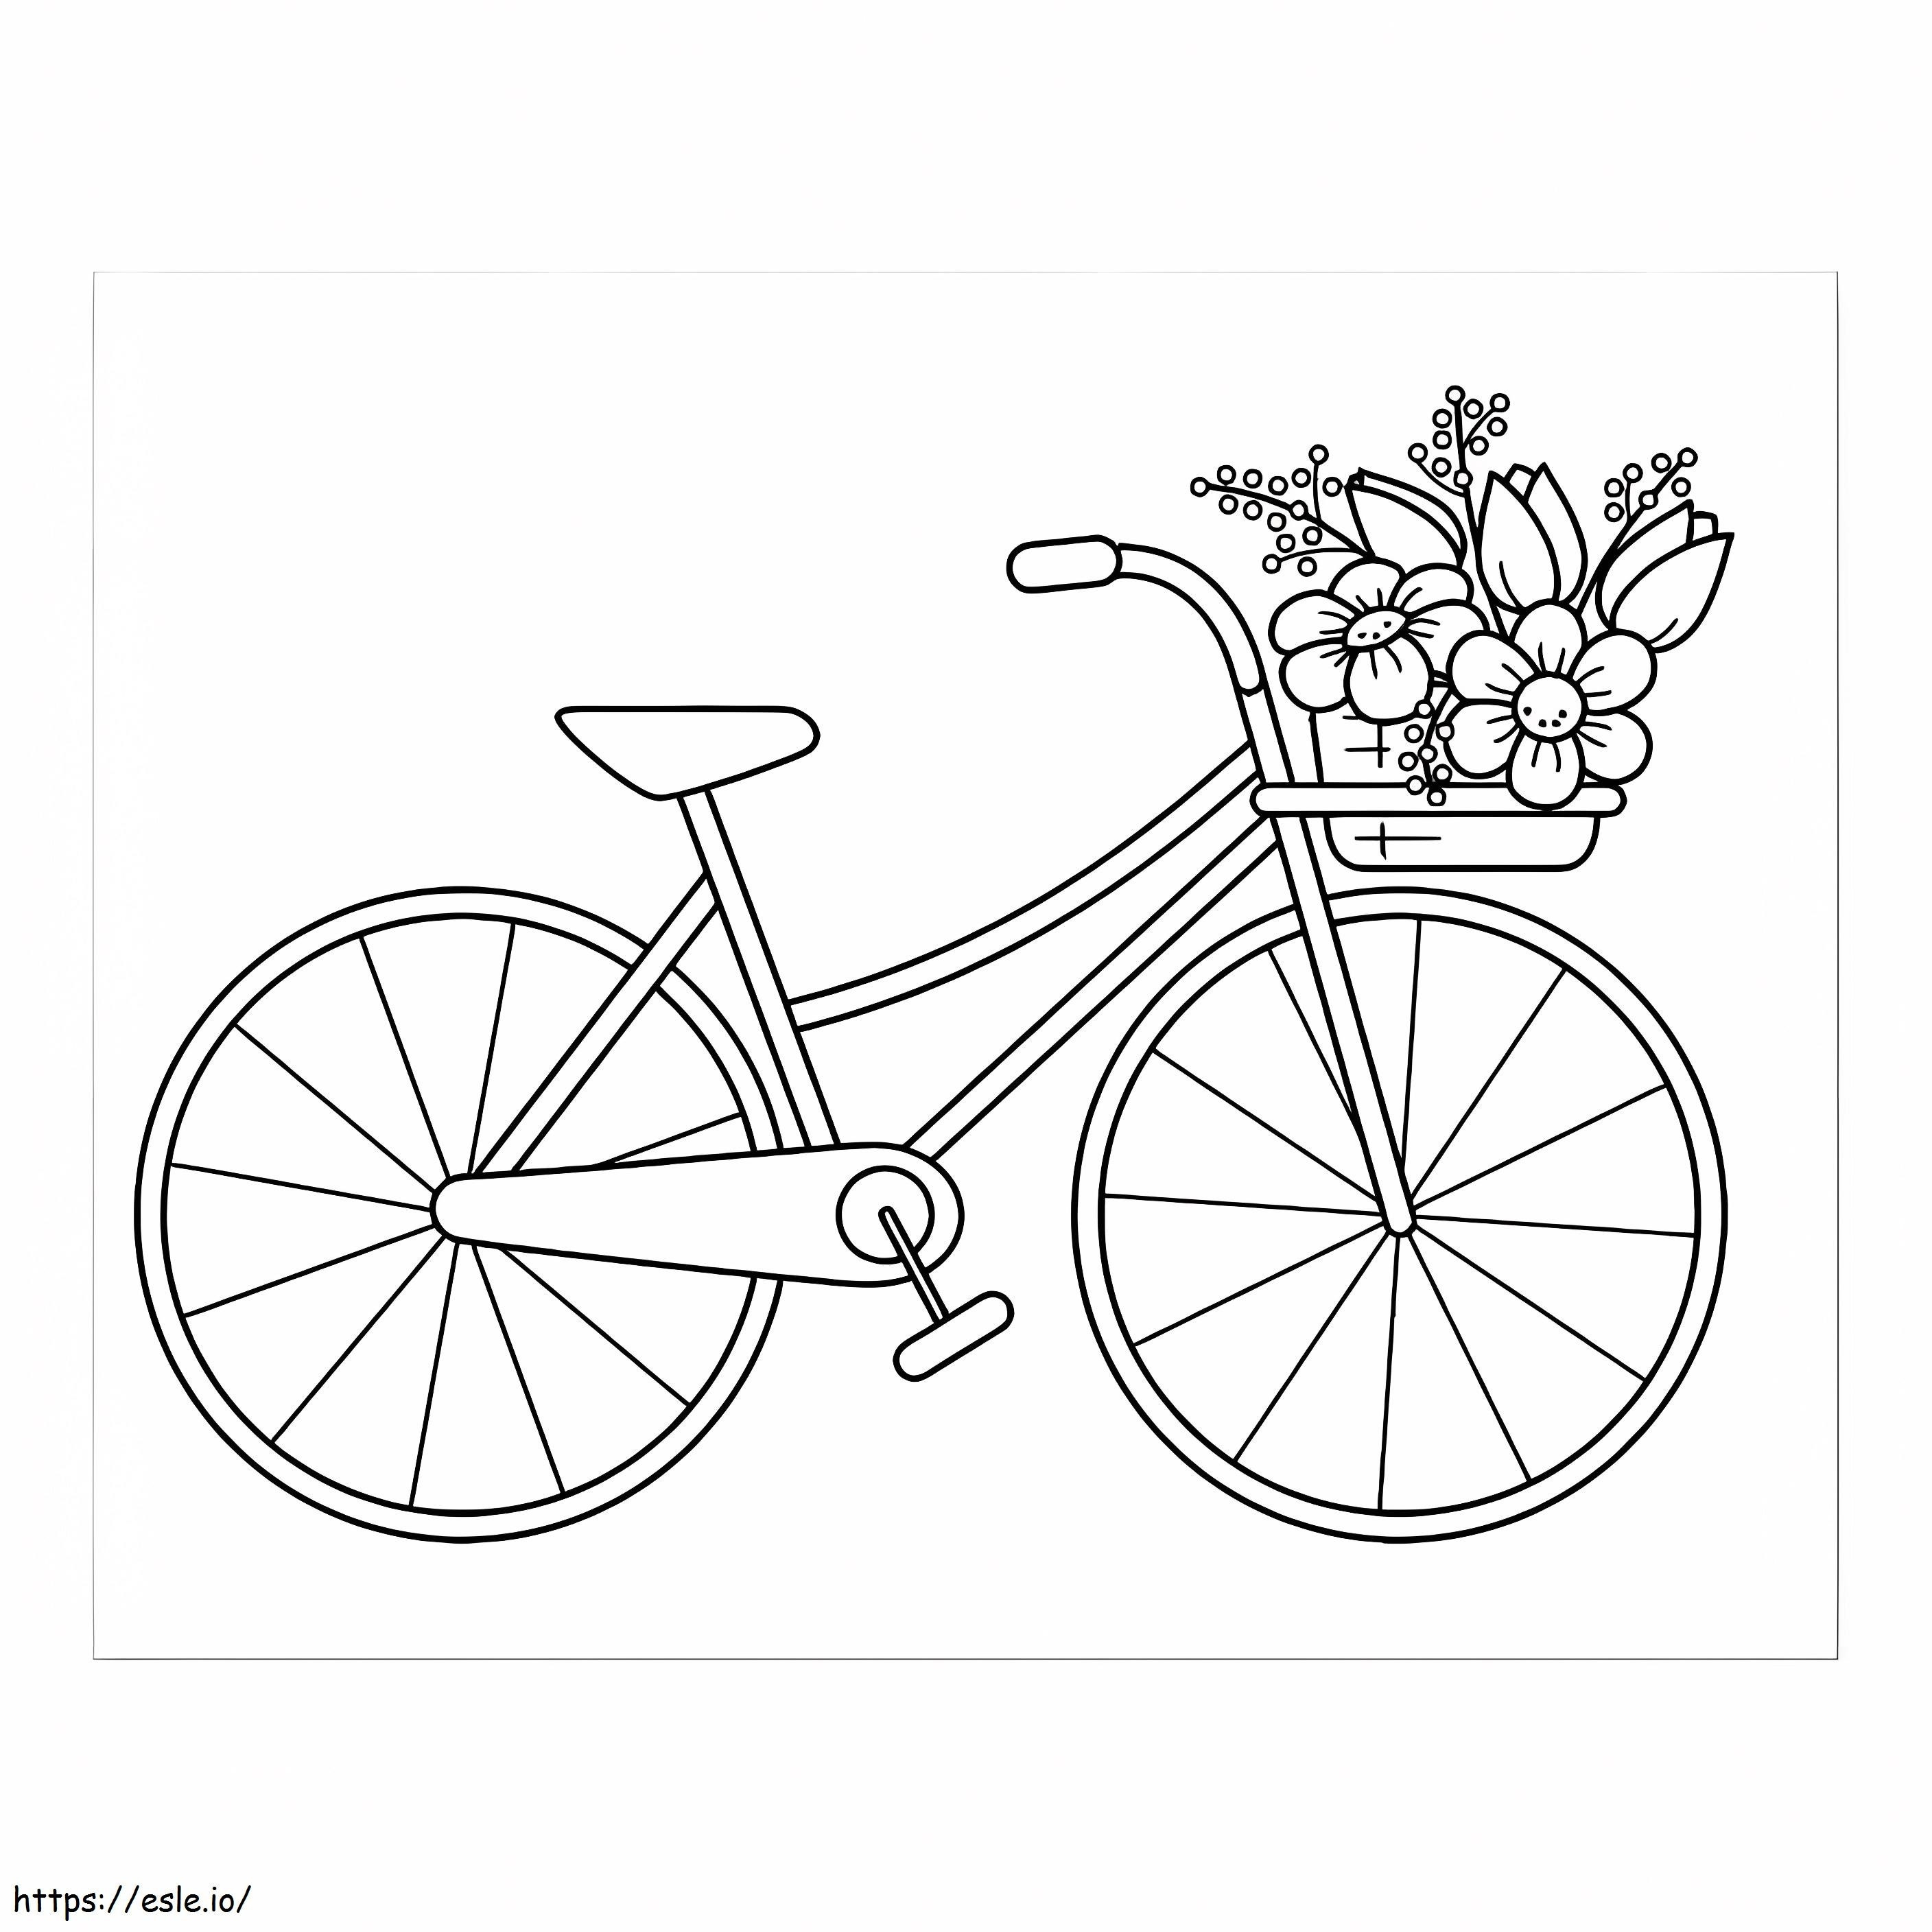 Fahrrad mit Blumenkorb ausmalbilder